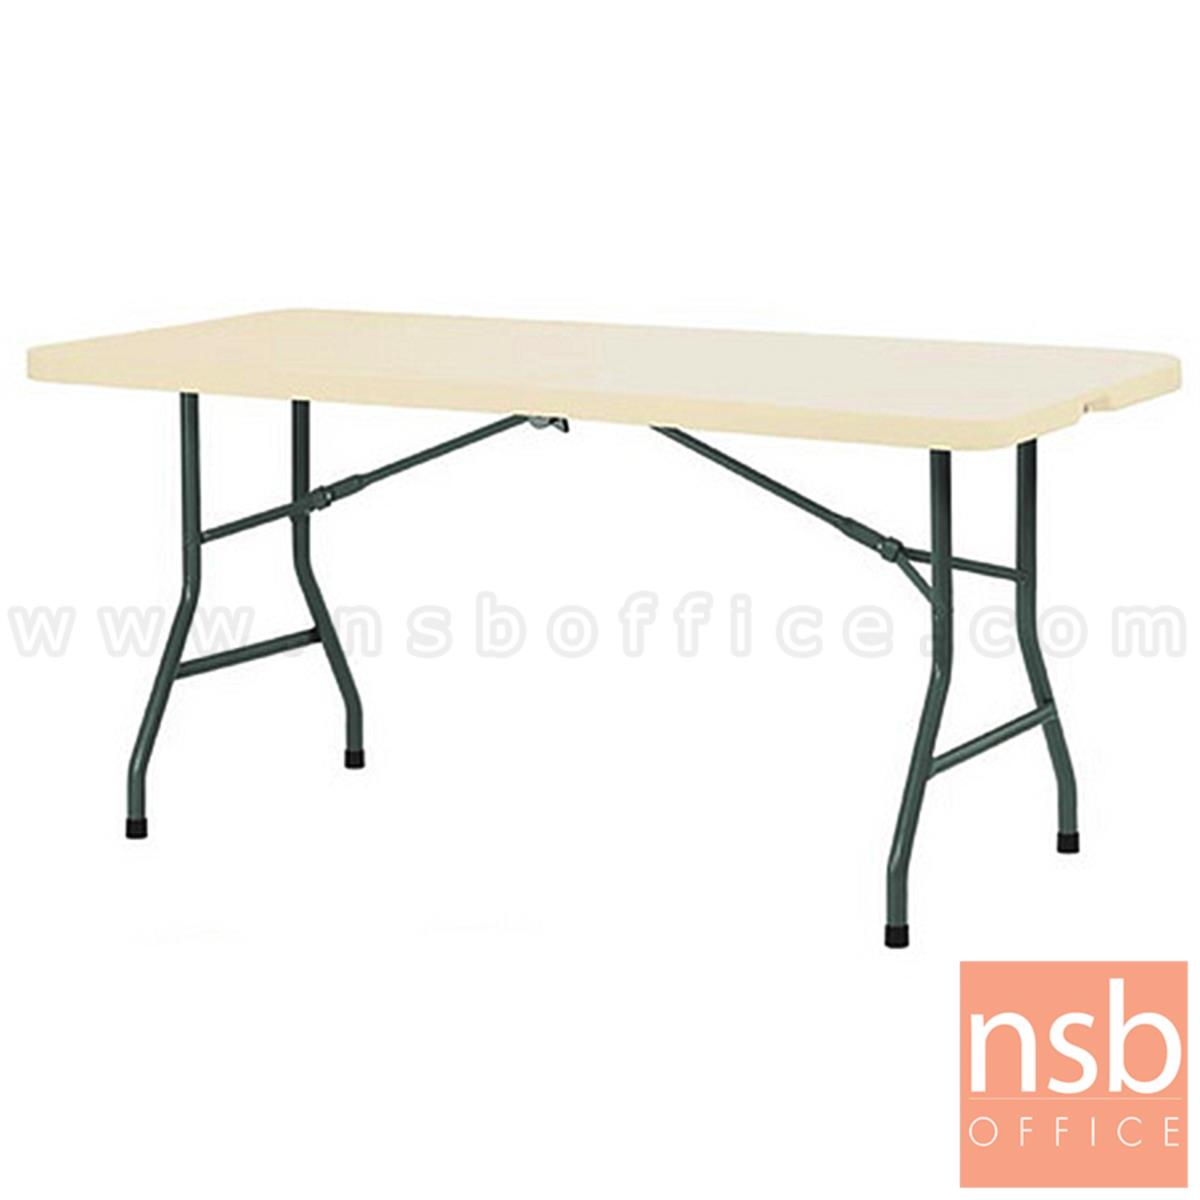 A19A038:โต๊ะพับหน้าพลาสติก รุ่น Newland (นิวแลนด์) ขนาด 152W ,182W cm.  โครงเหล็ก